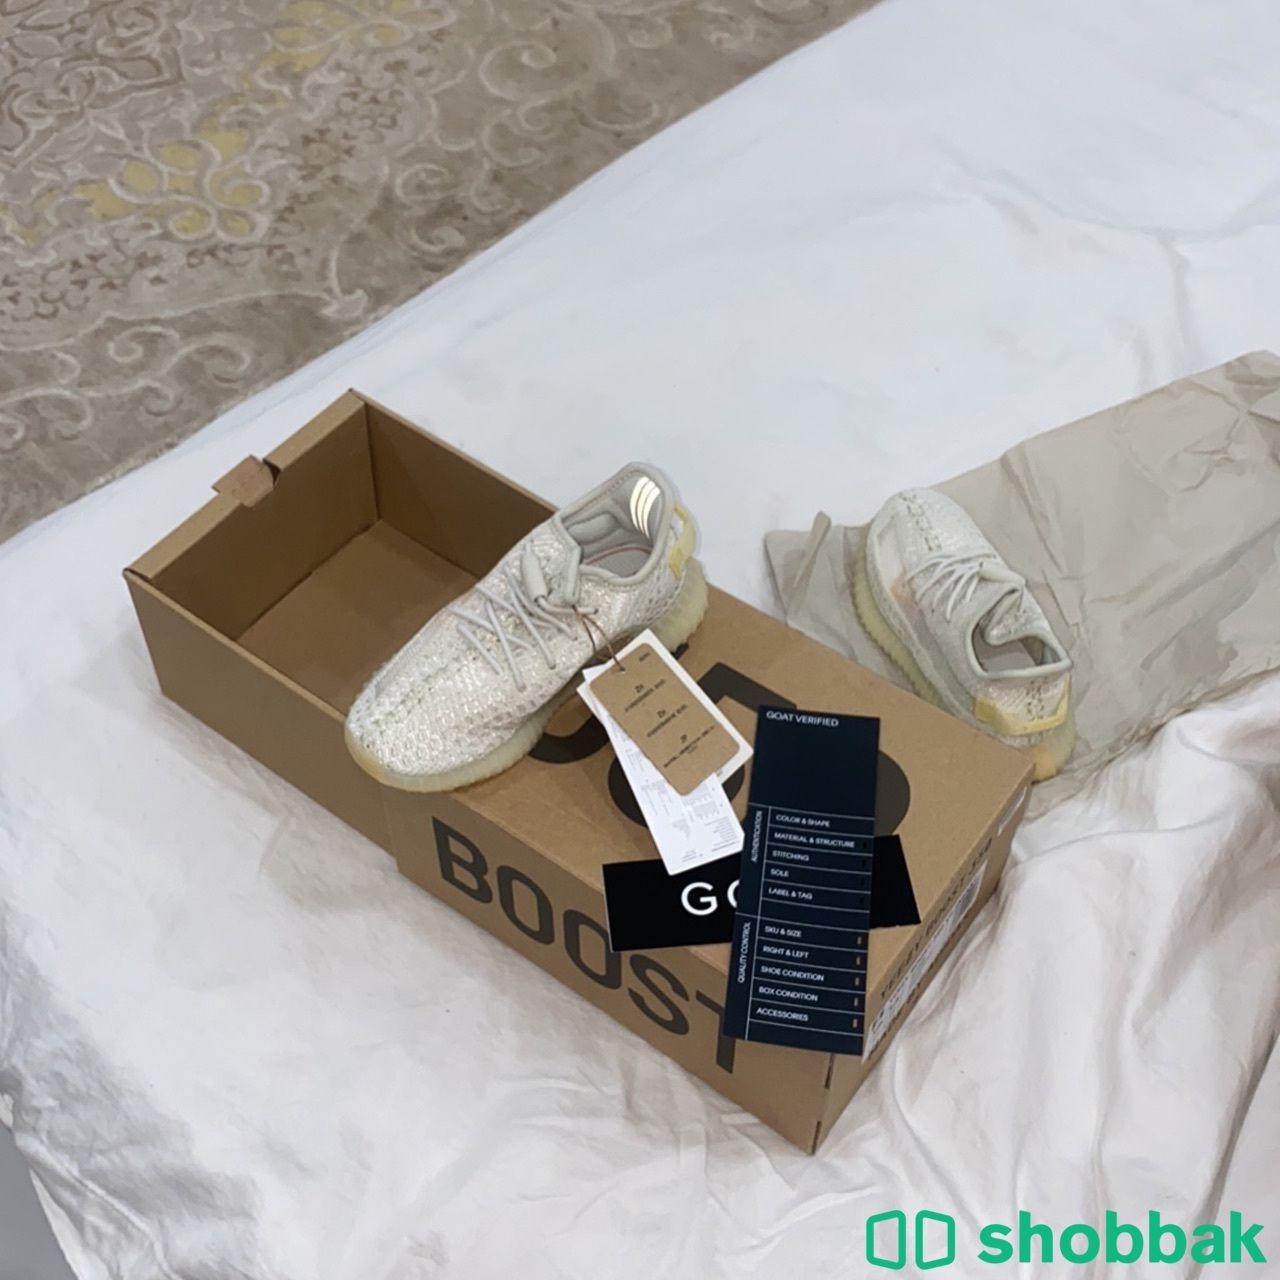 حذاء اديداس ايزي ٢٠٢١ جديده لم تخرج من الكرتون Shobbak Saudi Arabia